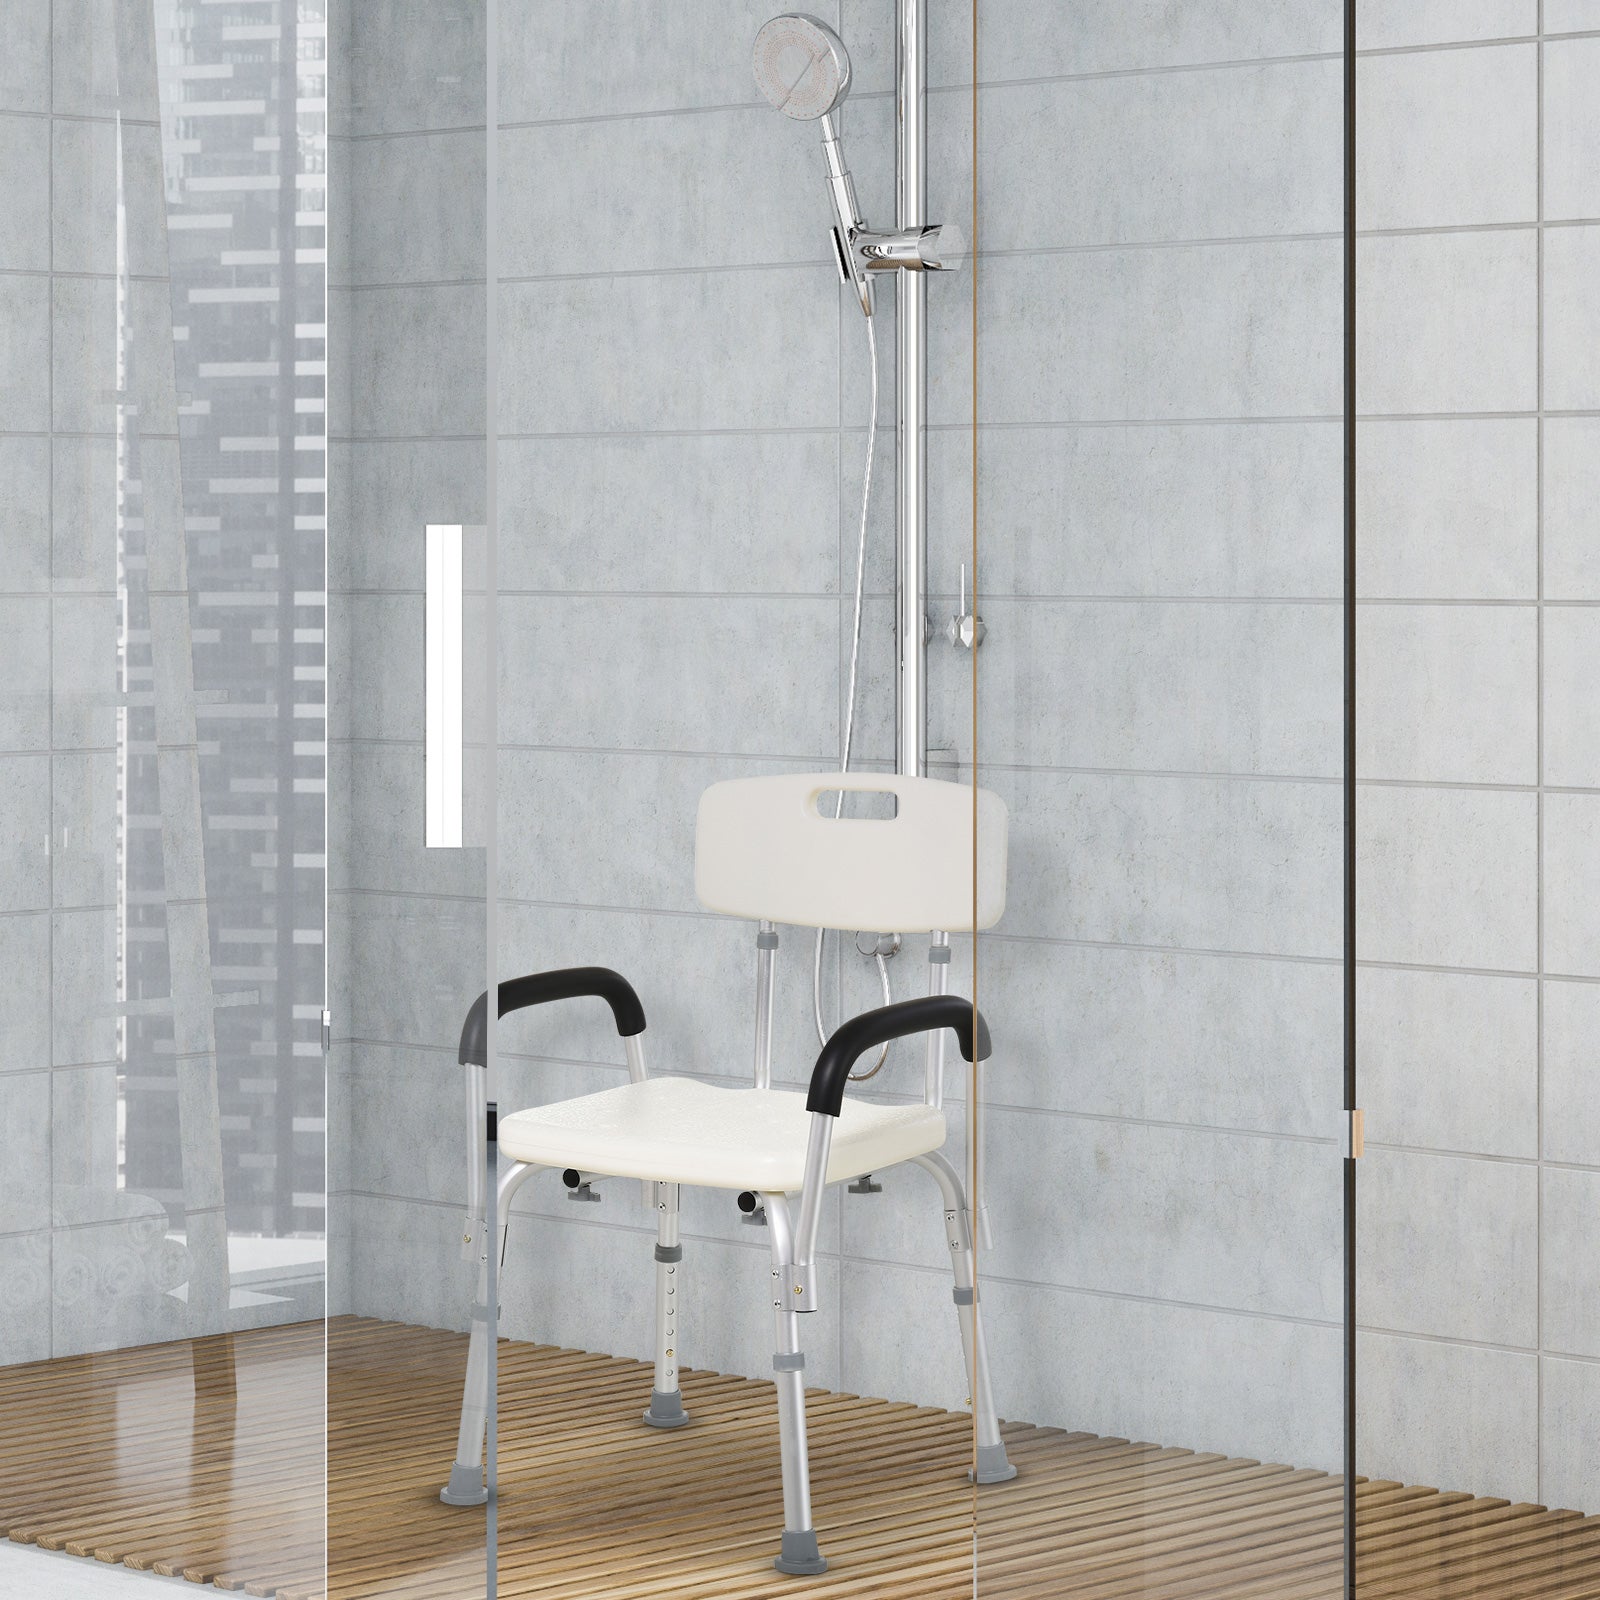 OUNONA Seggiolino regolabile per vasca da doccia Sedia da 8 altezza Sgabello da banco con suola antiscivolo in gomma per il bagno 